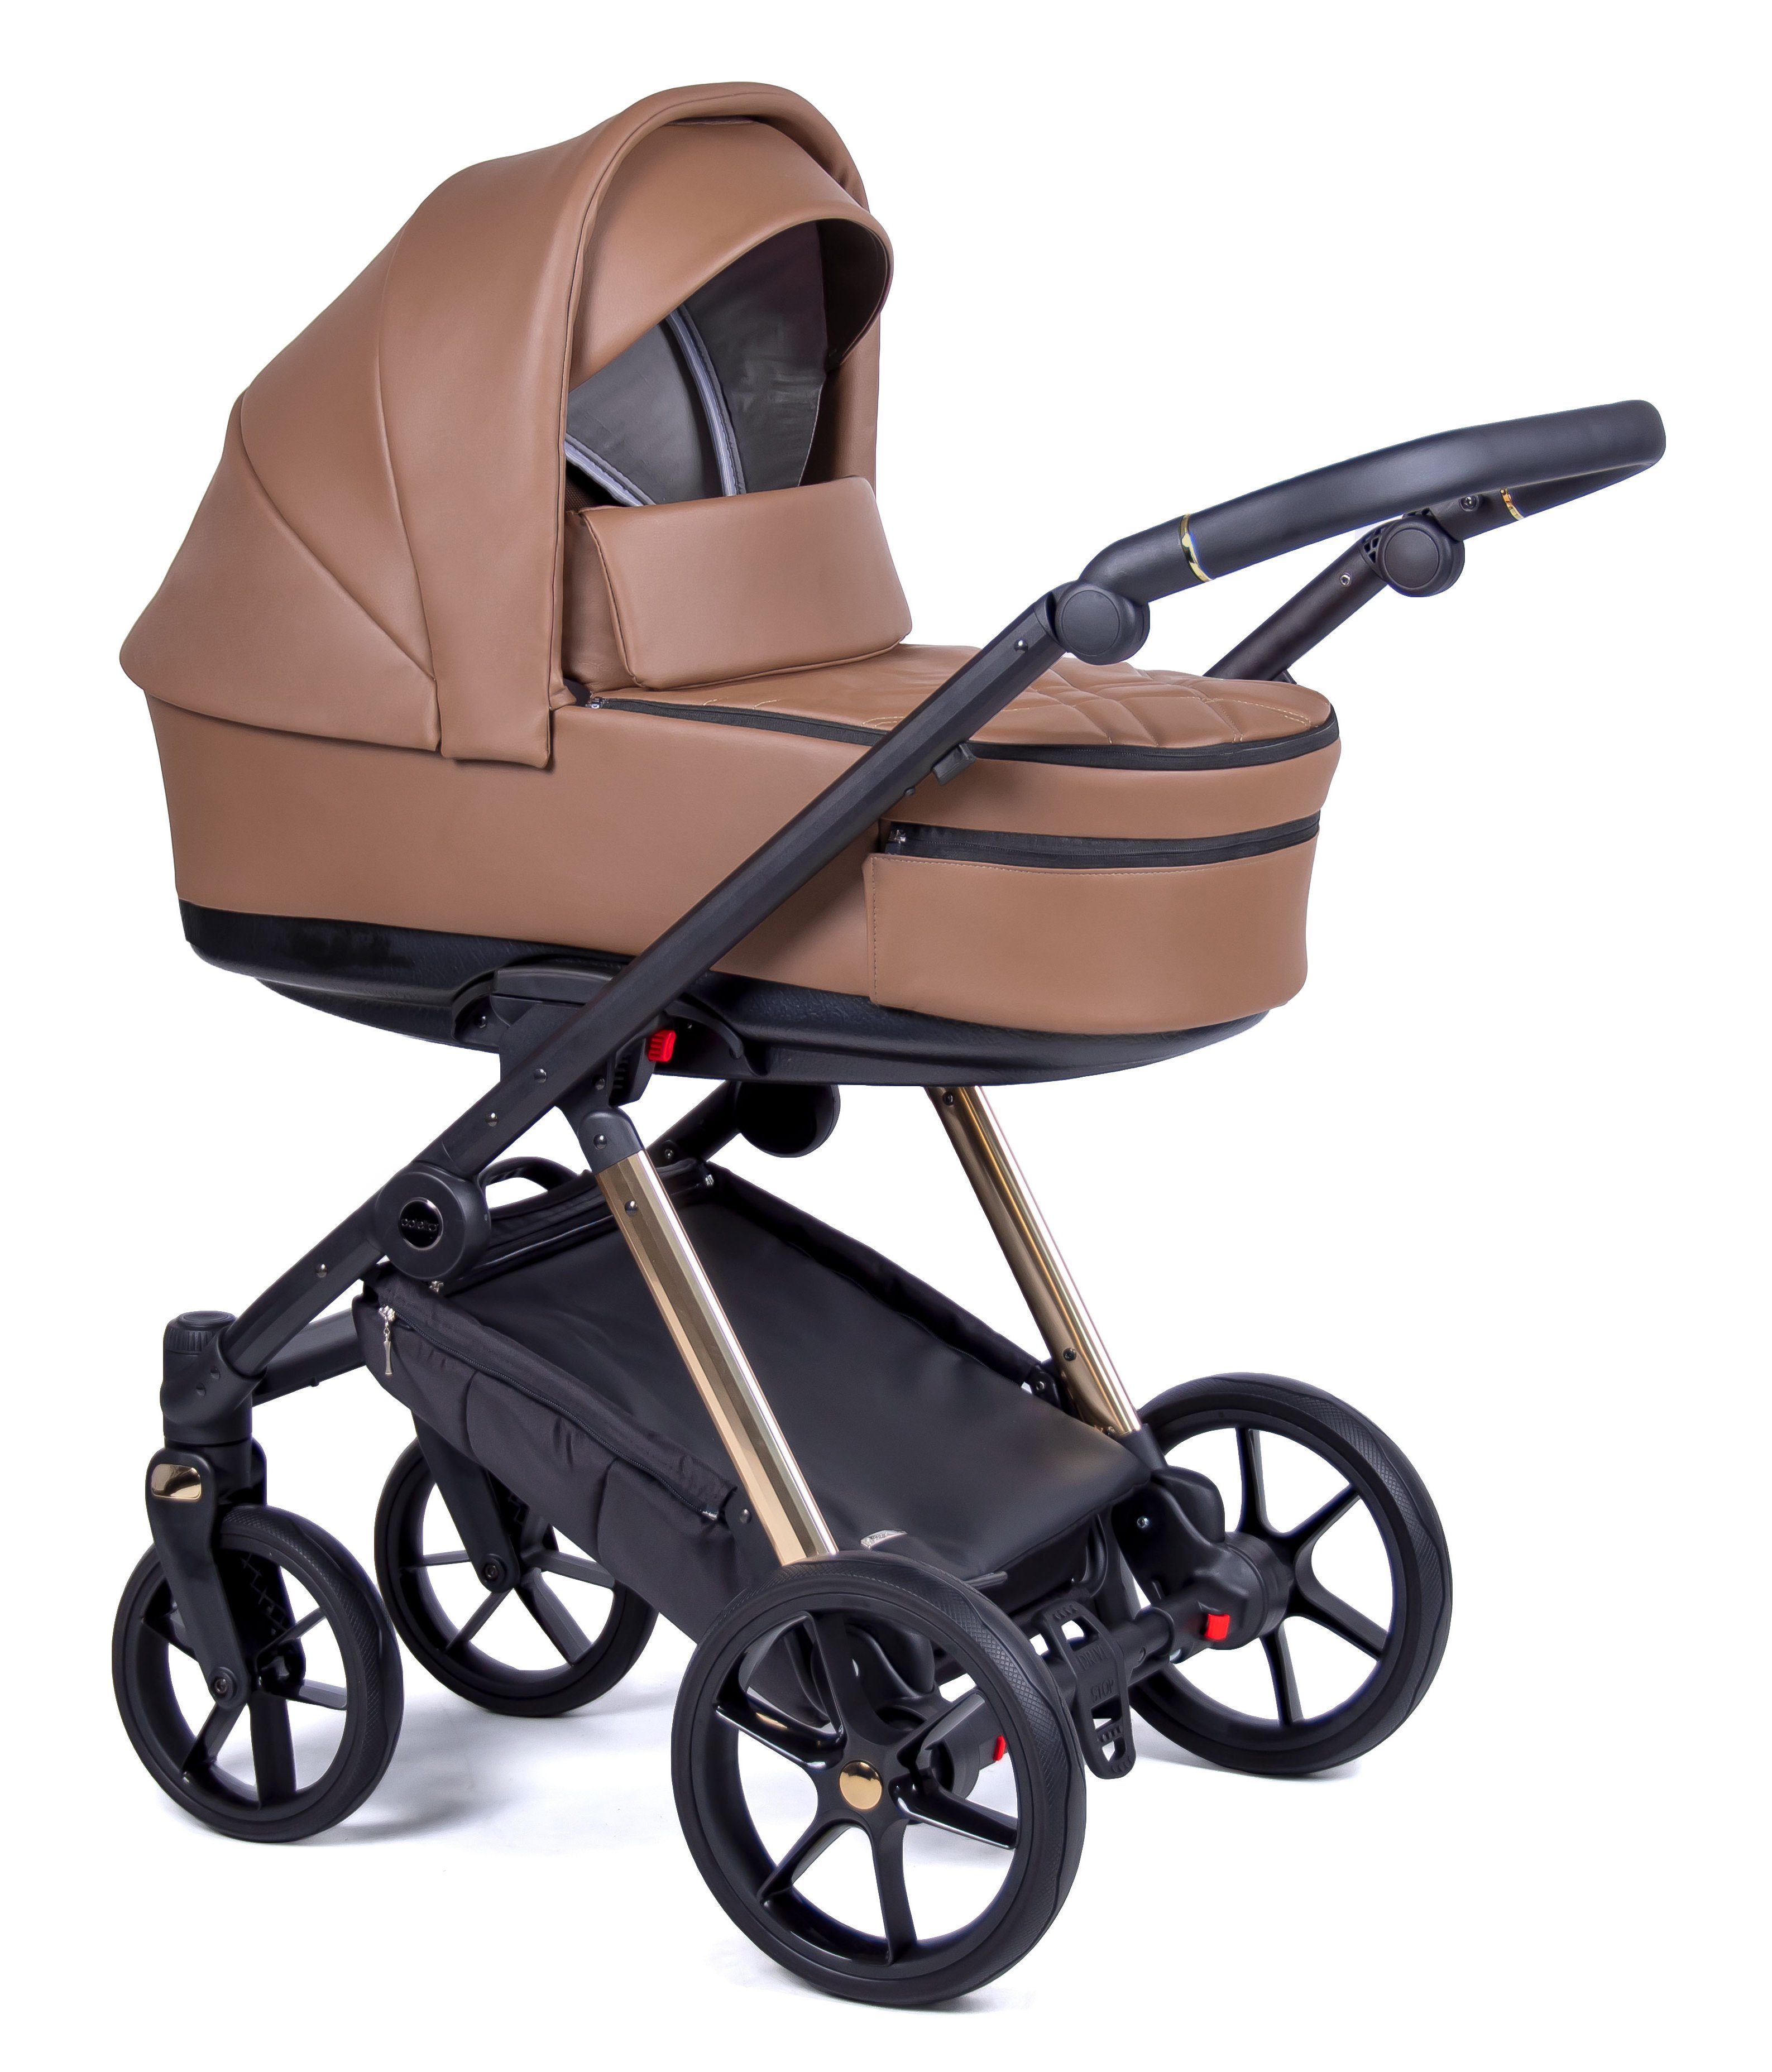 Teile Kombi-Kinderwagen 15 - = Braun Gestell in 1 12 Designs Kinderwagen-Set Axxis 3 gold - Premium in babies-on-wheels